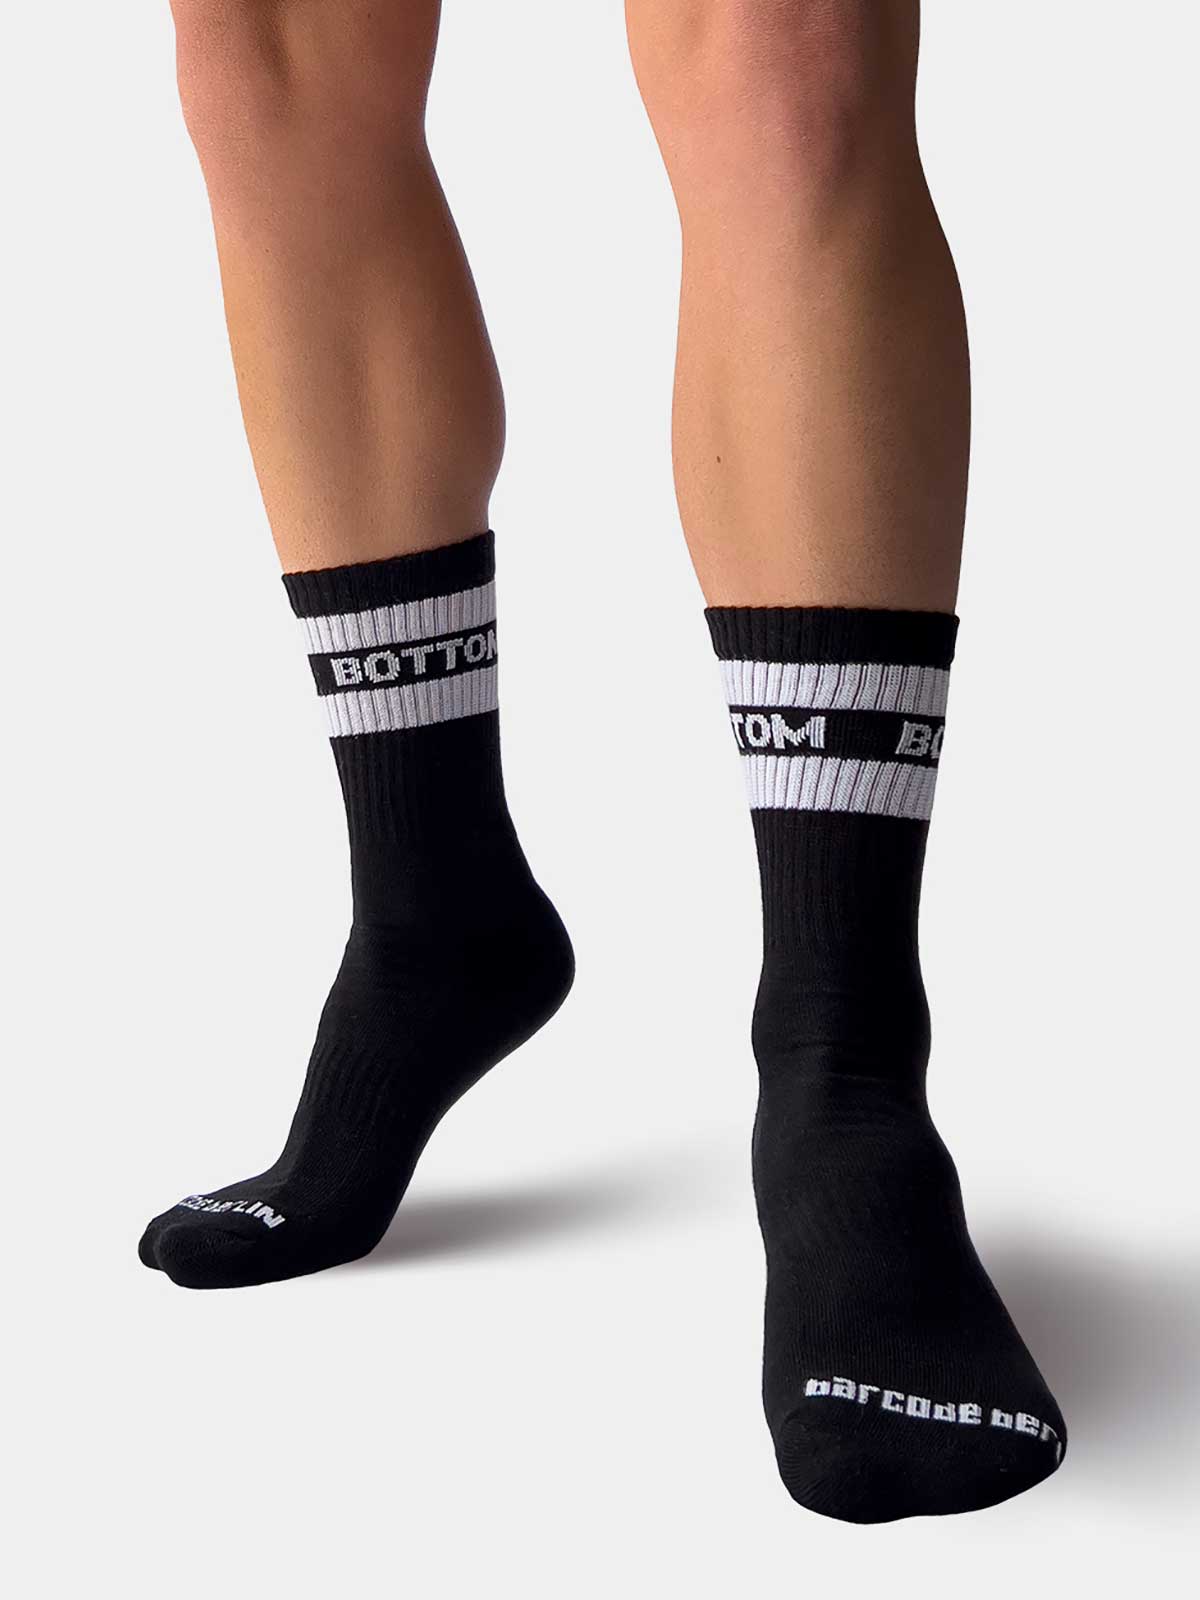 Socks Fetish Half Socks "BOTTOM" | Black/White